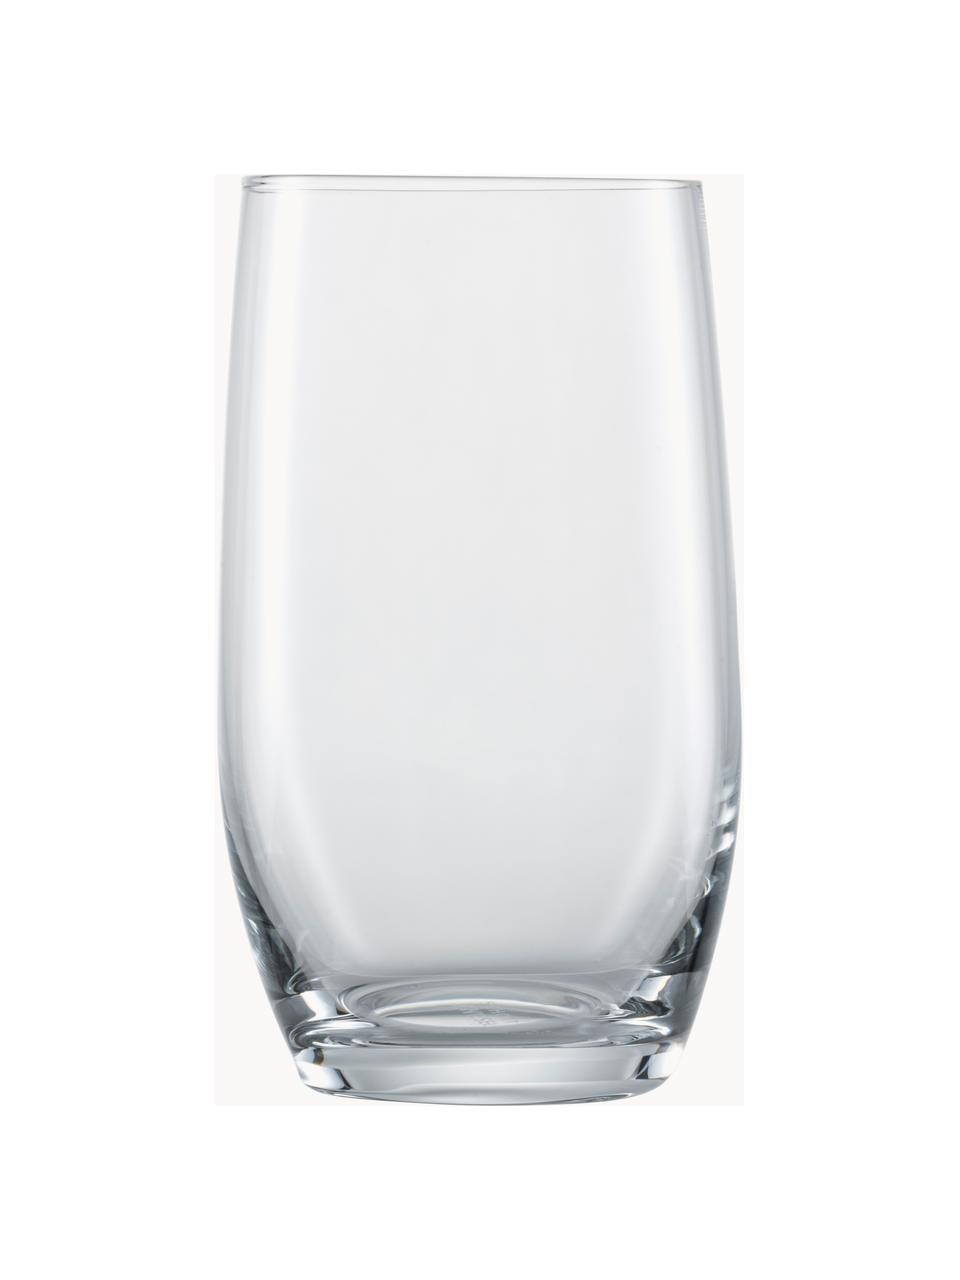 Szklanka For You, 4 szt., Tritan, Transparentny, Ø 7 x W 12 cm, 330 ml